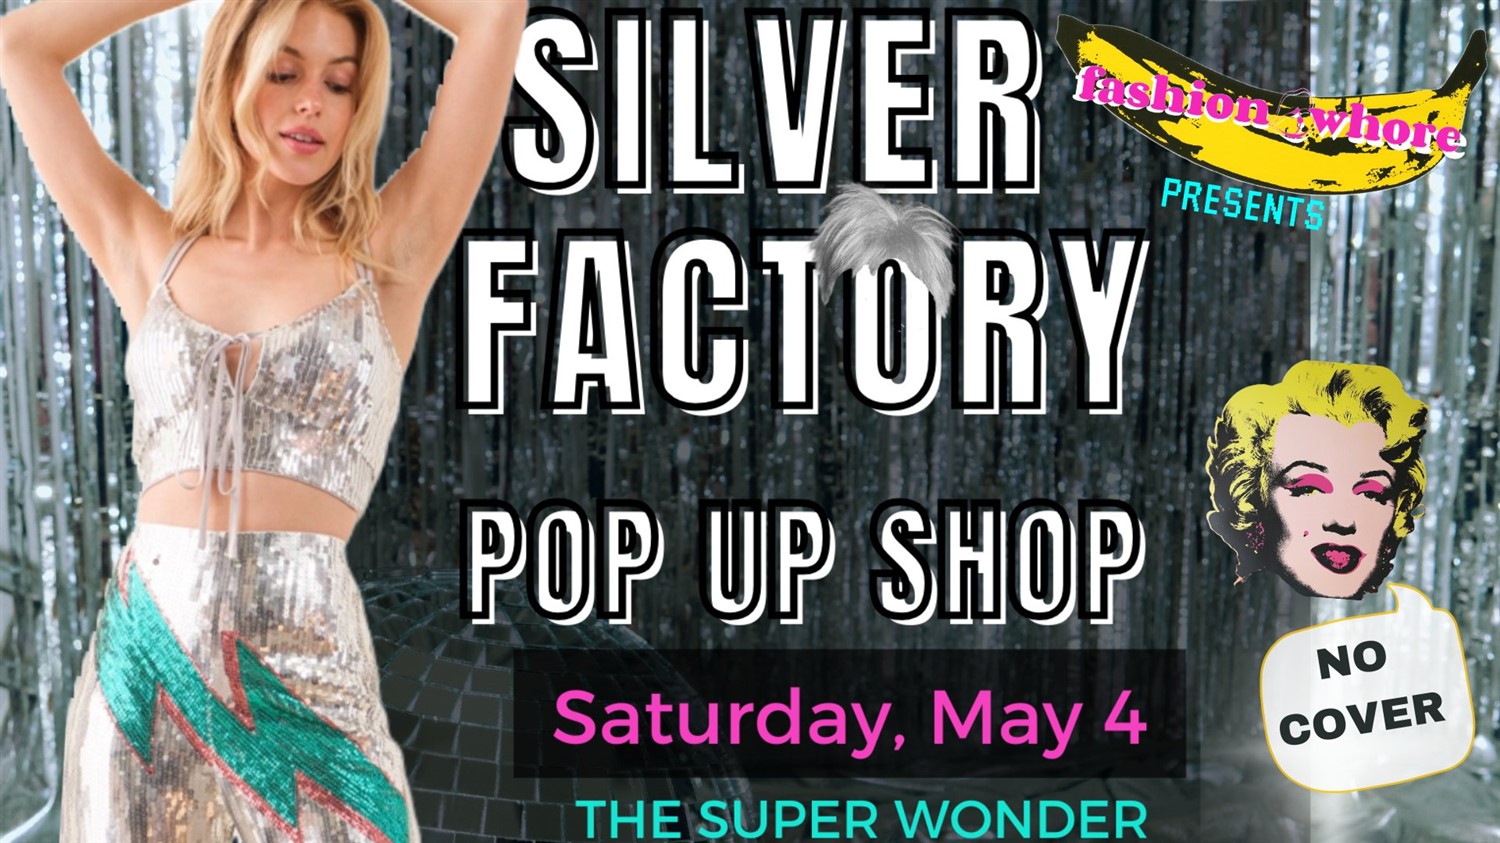 SILVER FACTORY Pop Up & DJ on may. 04, 18:00@SUPER WONDER GALLERY - Compra entradas y obtén información enSuper Wonder Gallery 